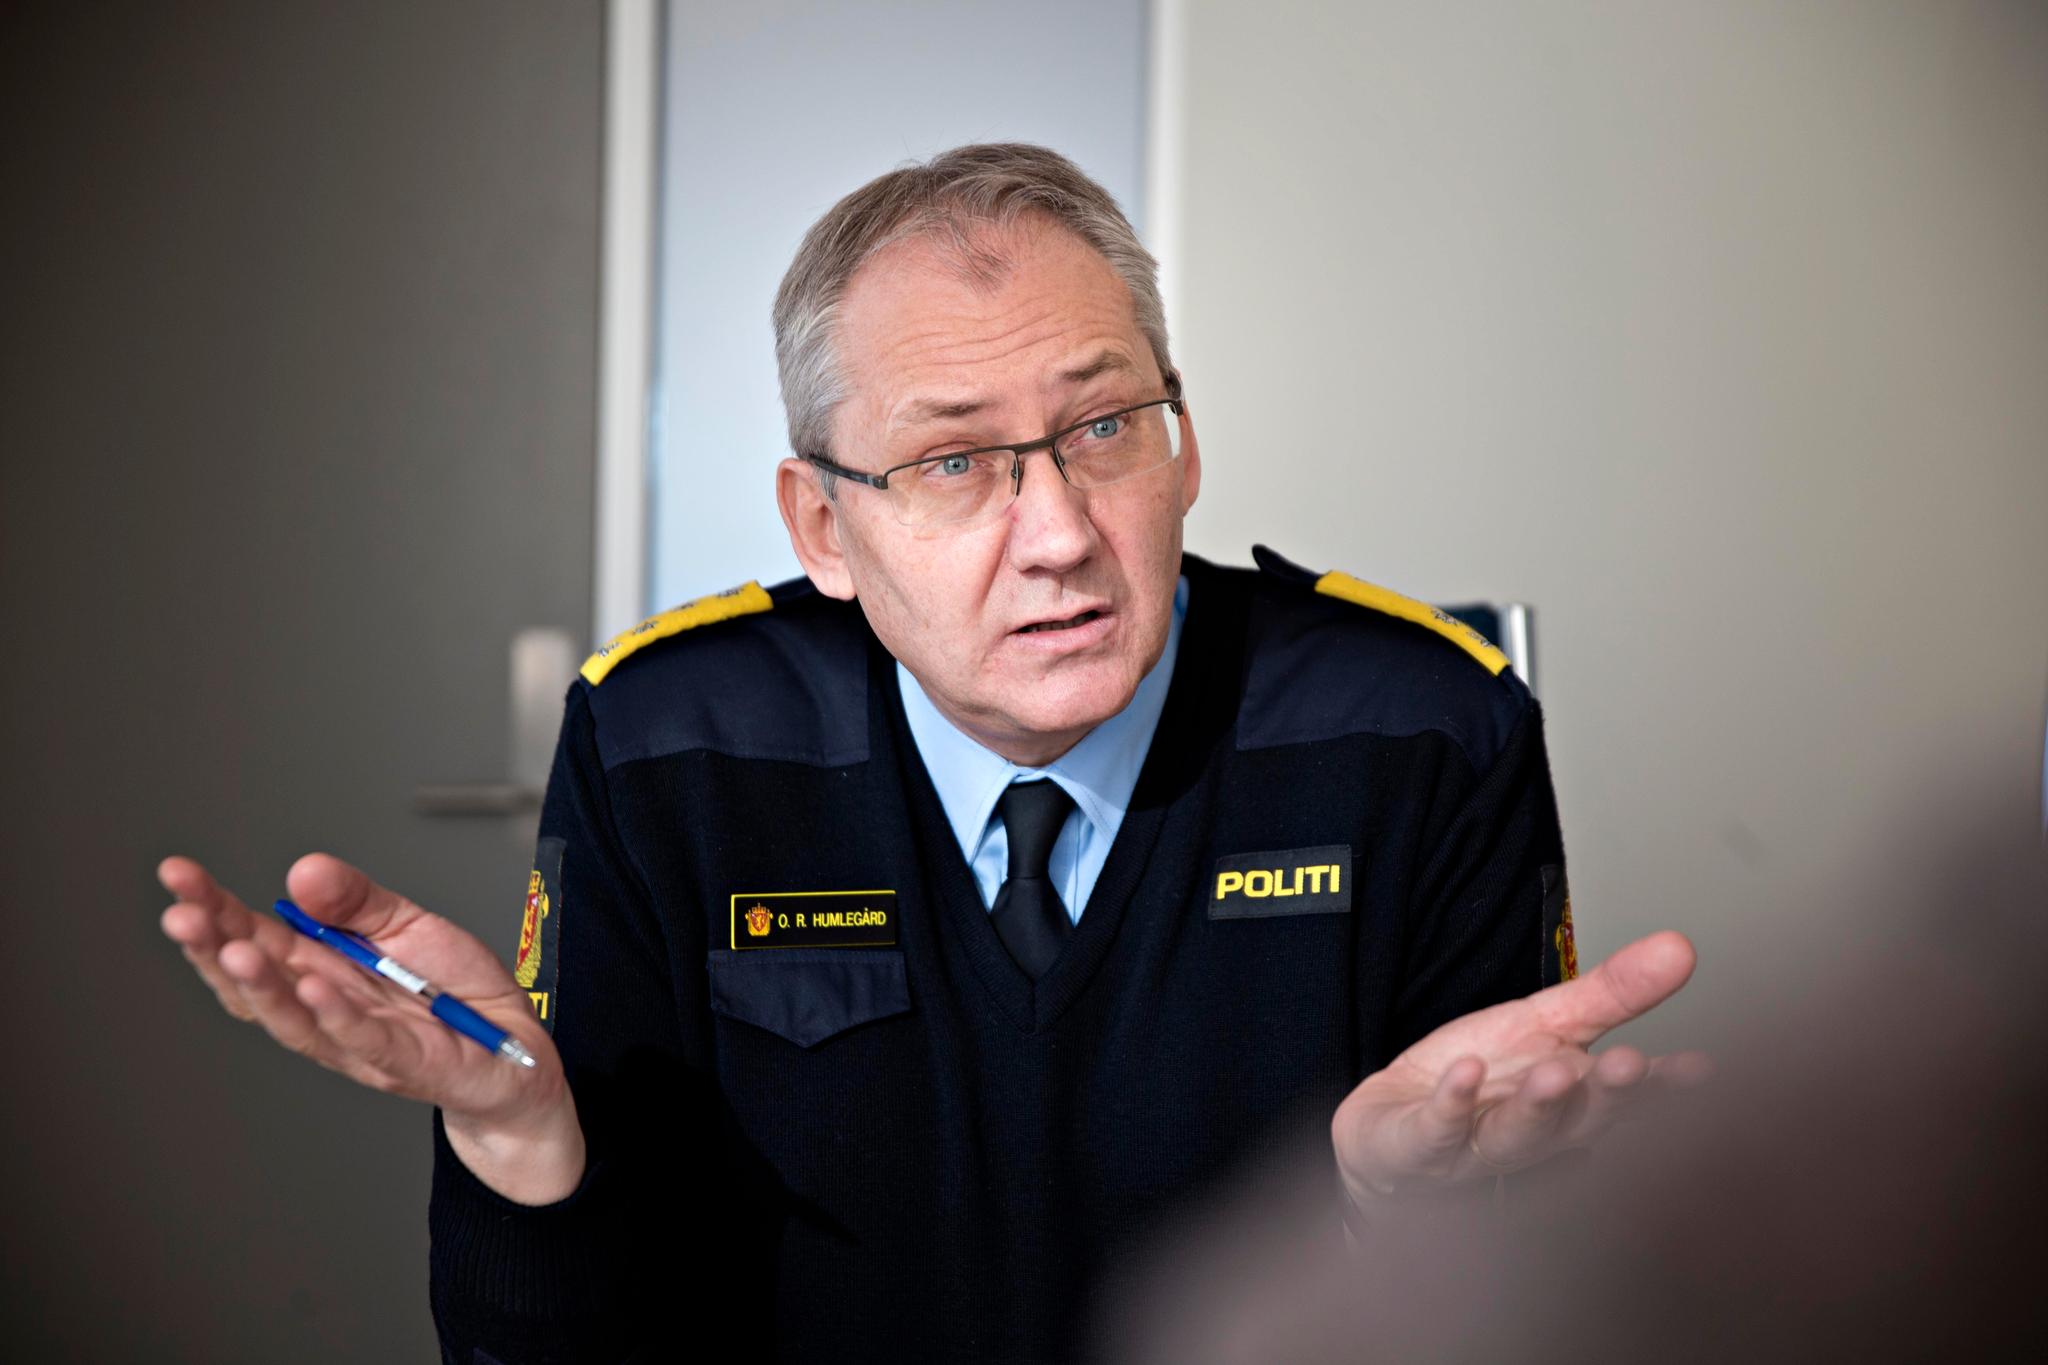 Politidirektoratet, som ledes av politidirektør Odd Reidar Humlegård, innrømmer til Aftenposten at journalføringspraksisen ikke har vært tilfredsstillende. Nå skjerper de rutiner og internkontrollen på dette området.